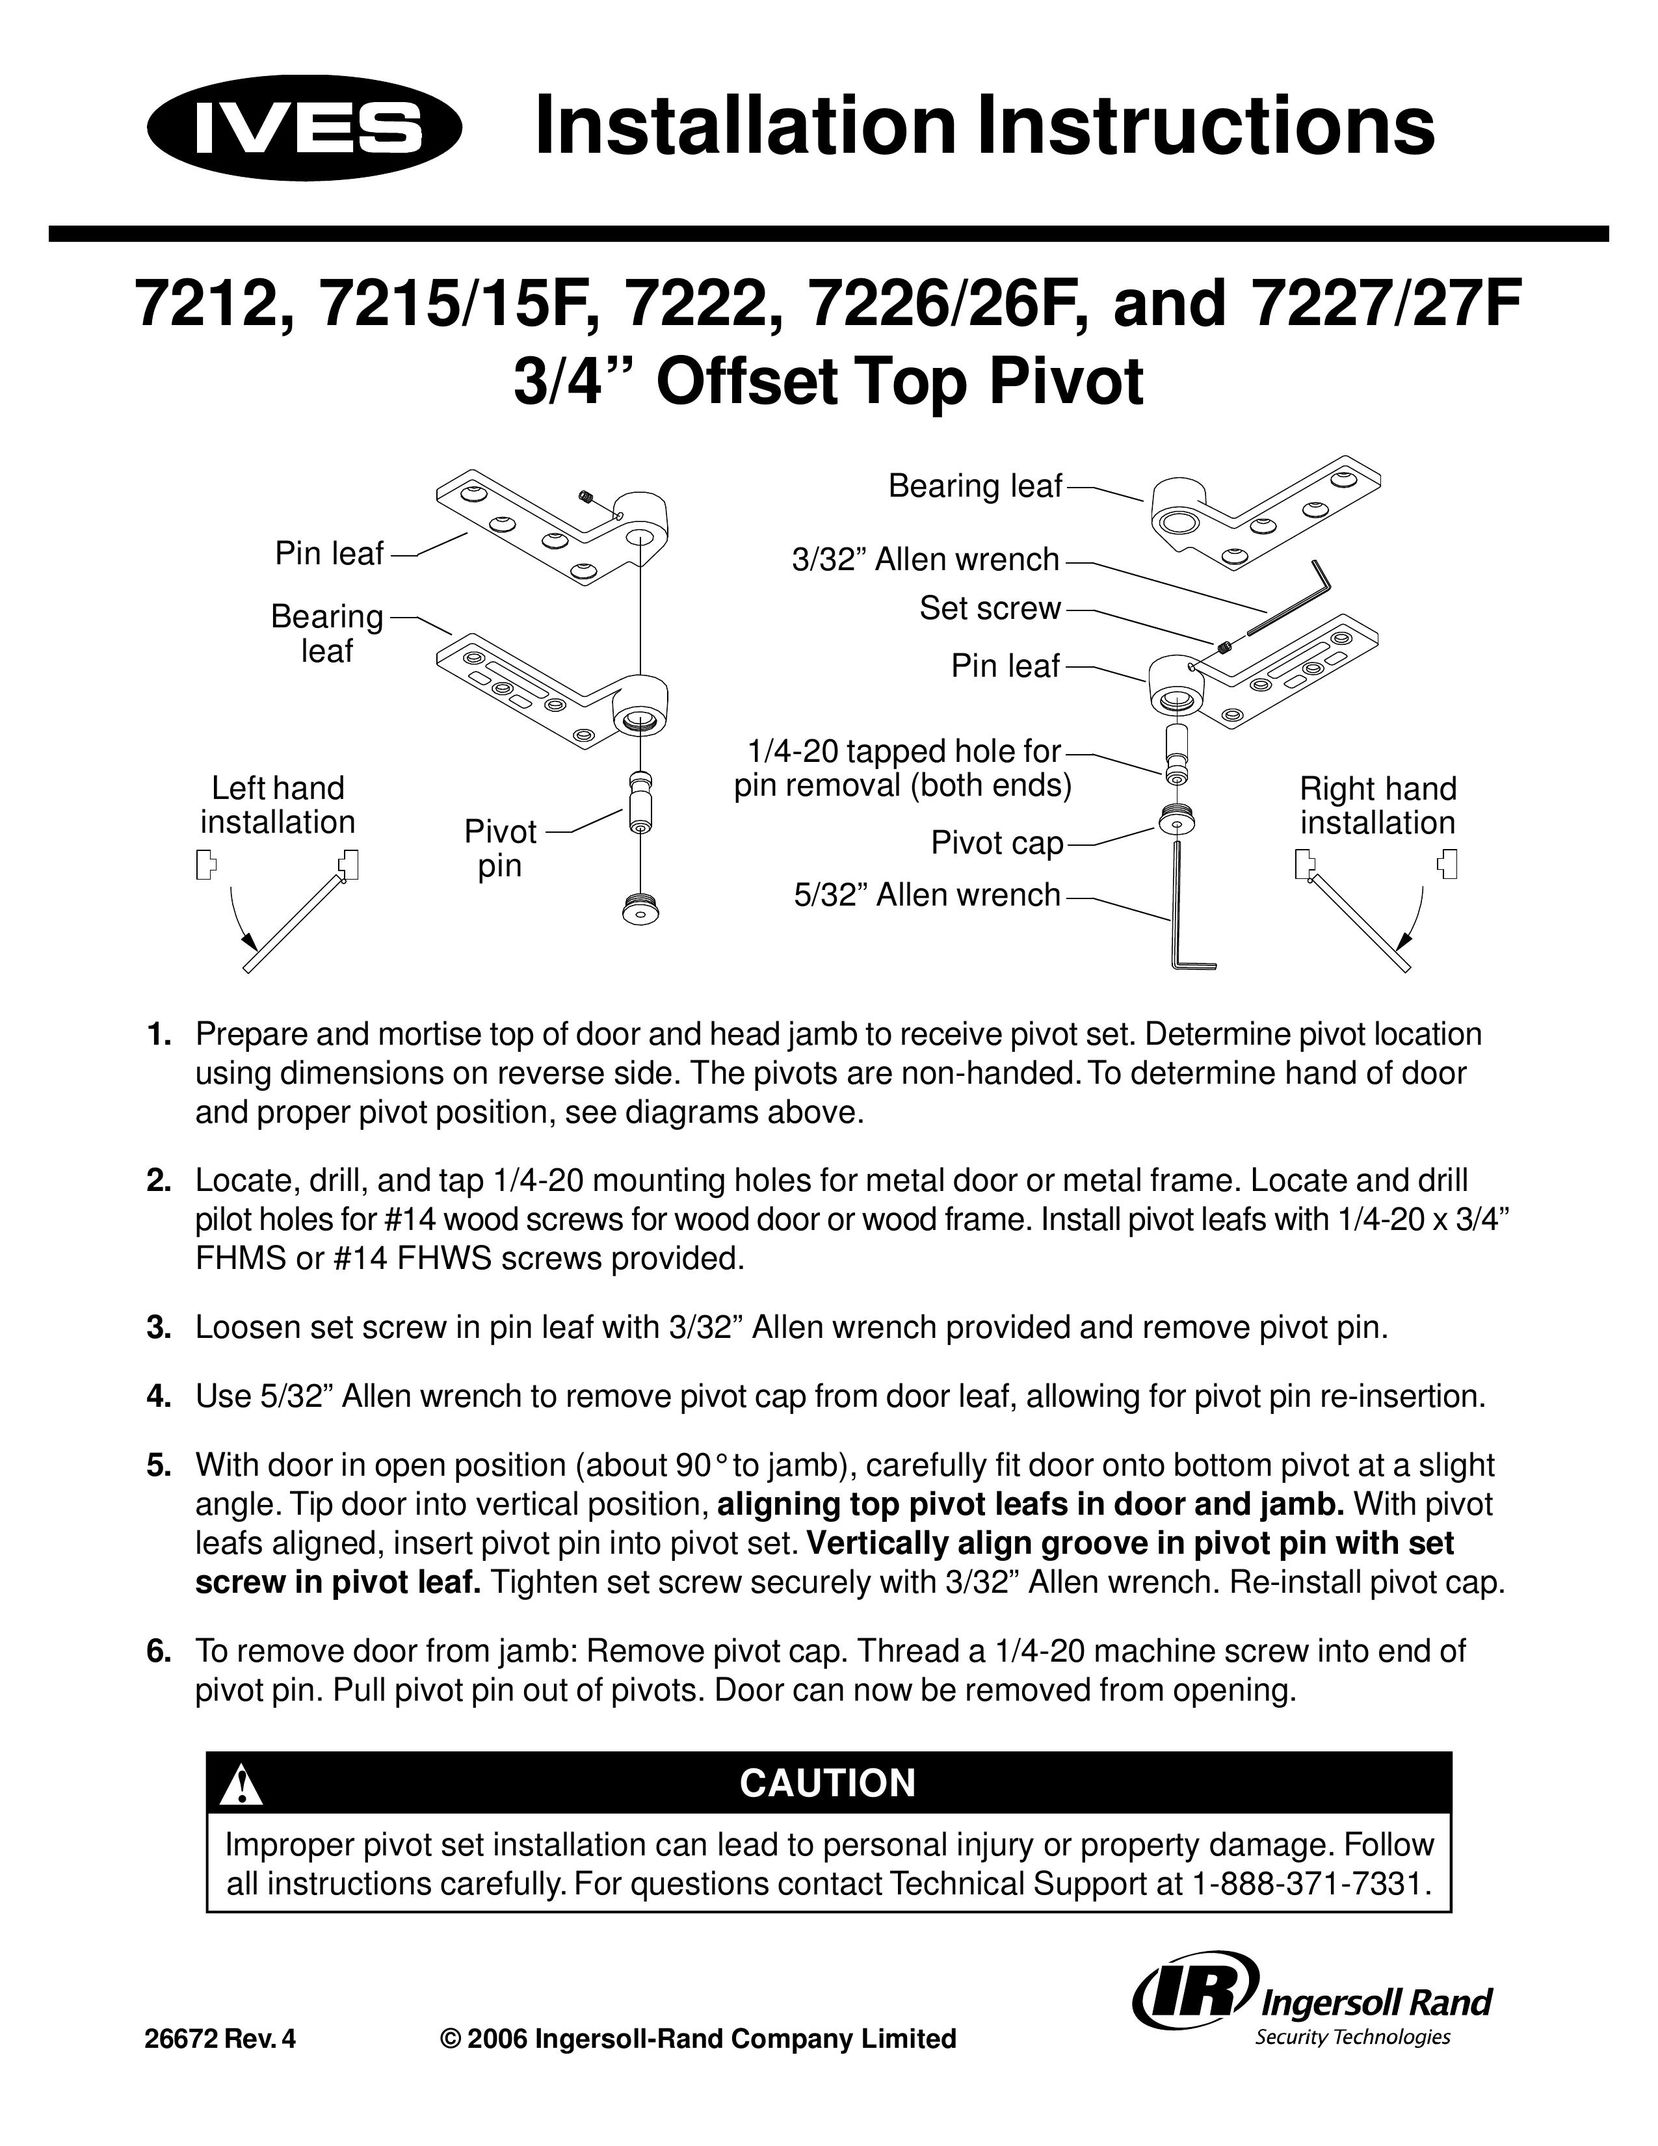 Ives 7226/26F Door User Manual